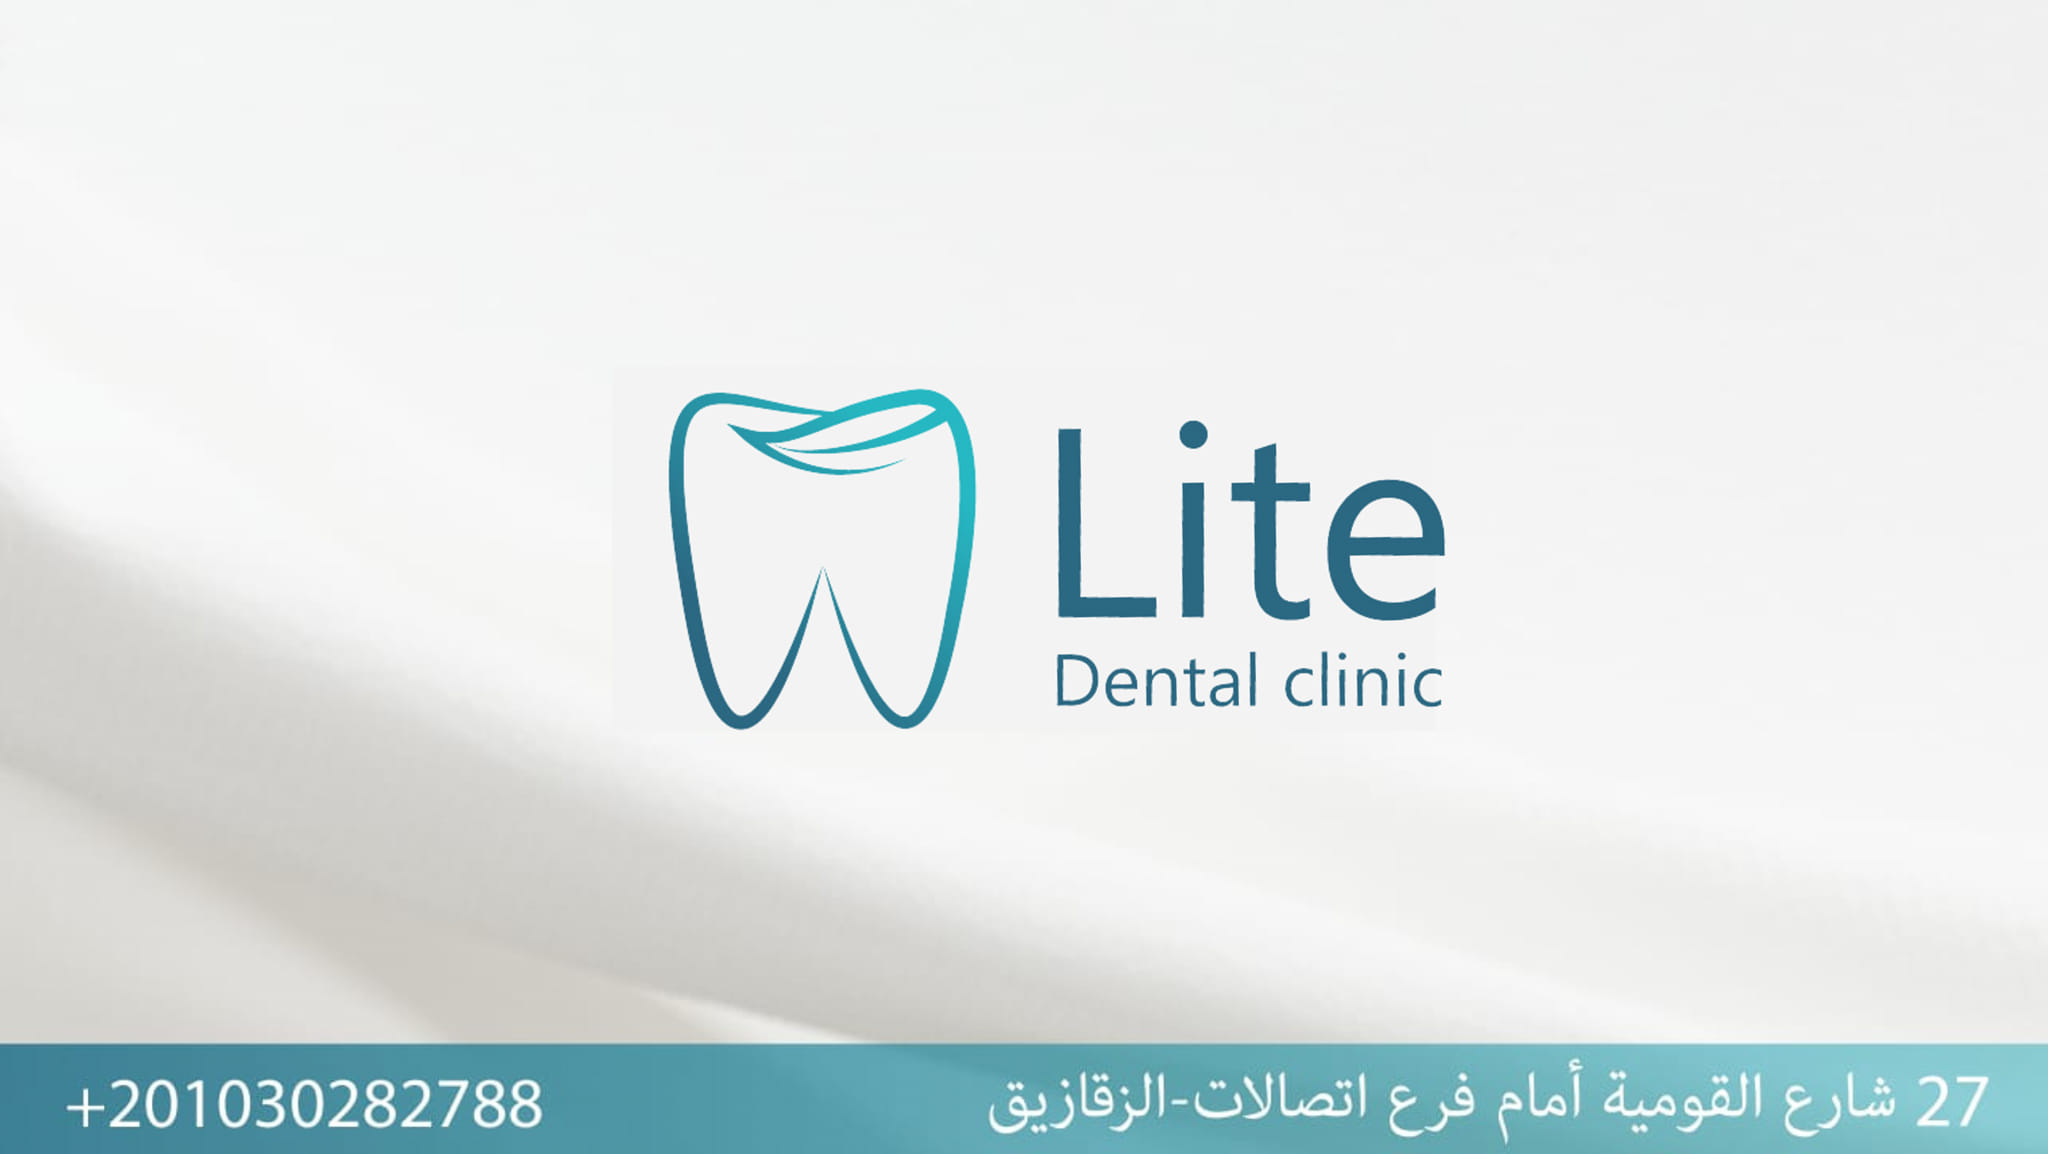 غلاف Lite dental clinic